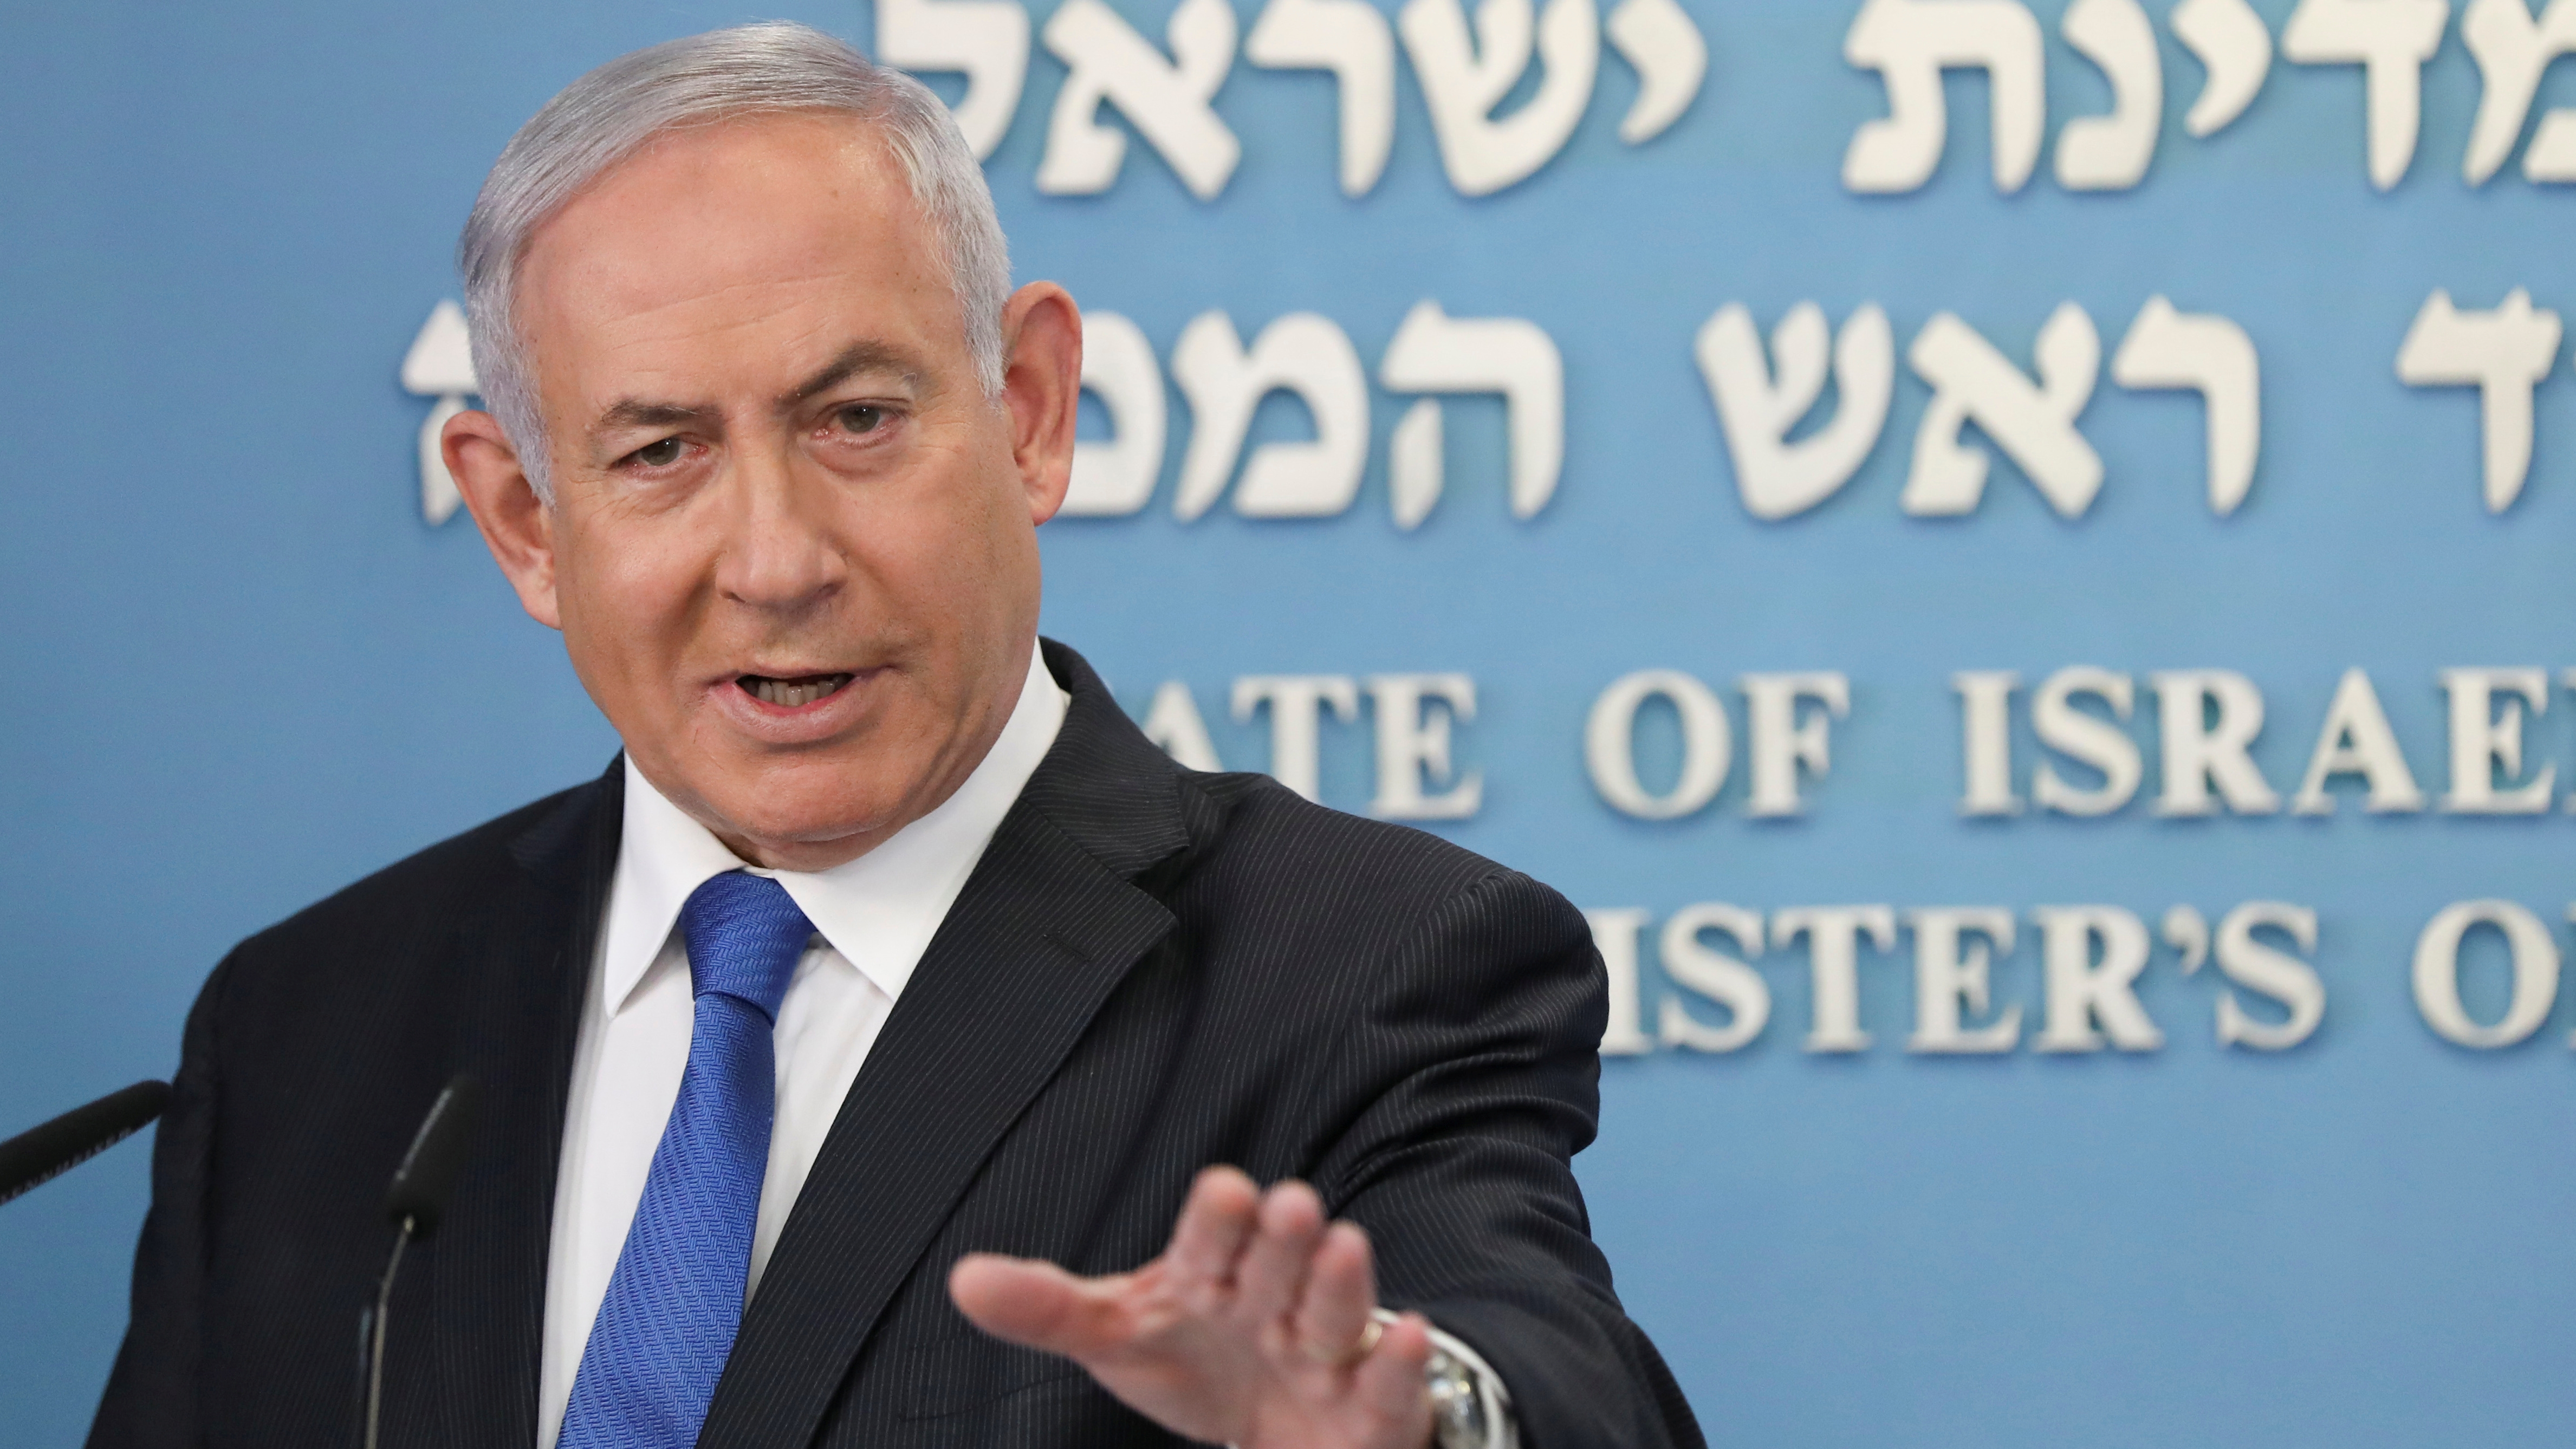 El premier israelí Benjamin Netanyahu (Abir Sultan /Pool via REUTERS)